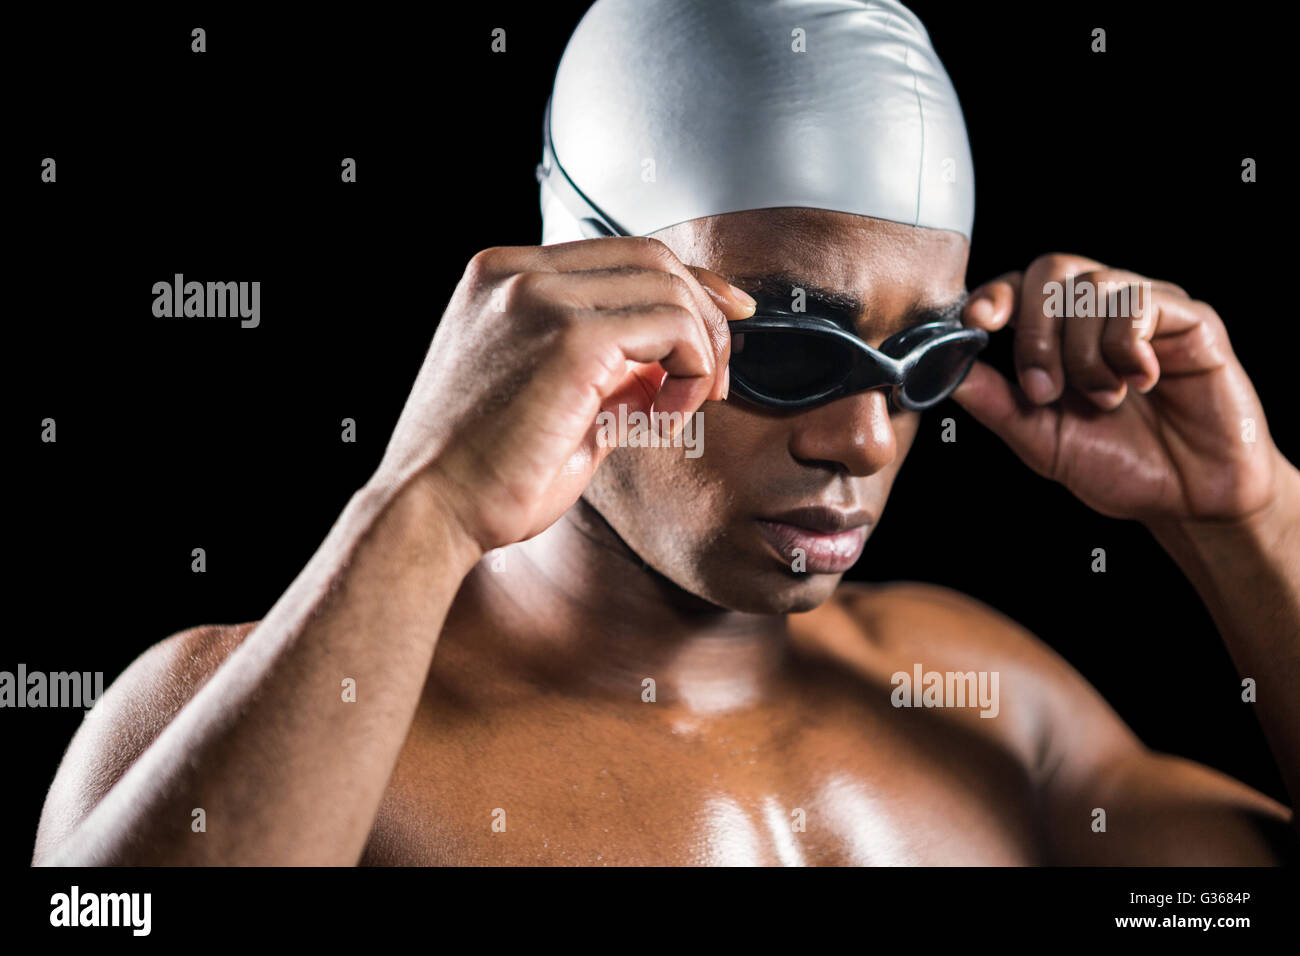 Nuotatore pronto a immersione Foto Stock